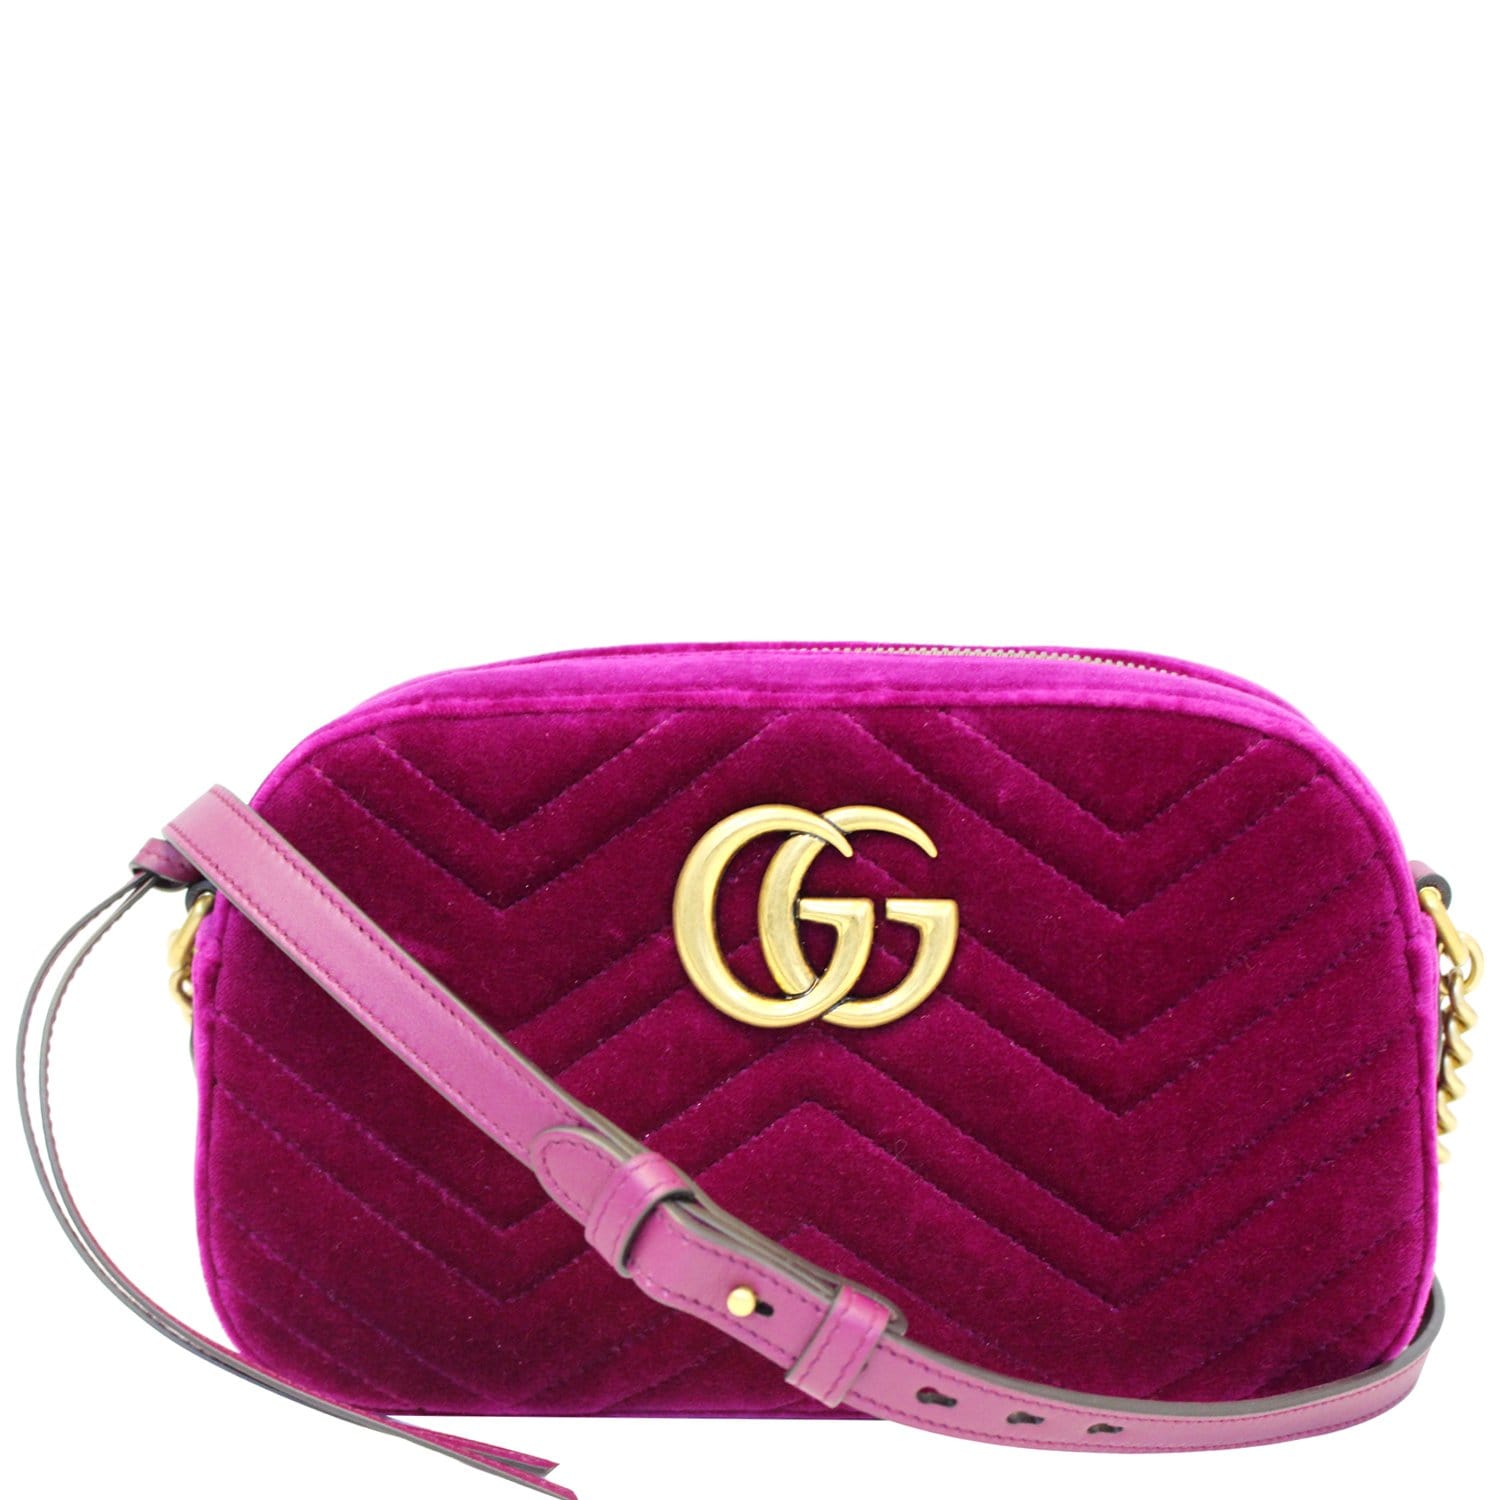 Gg marmont chain velvet crossbody bag Gucci Red in Velvet - 28405768